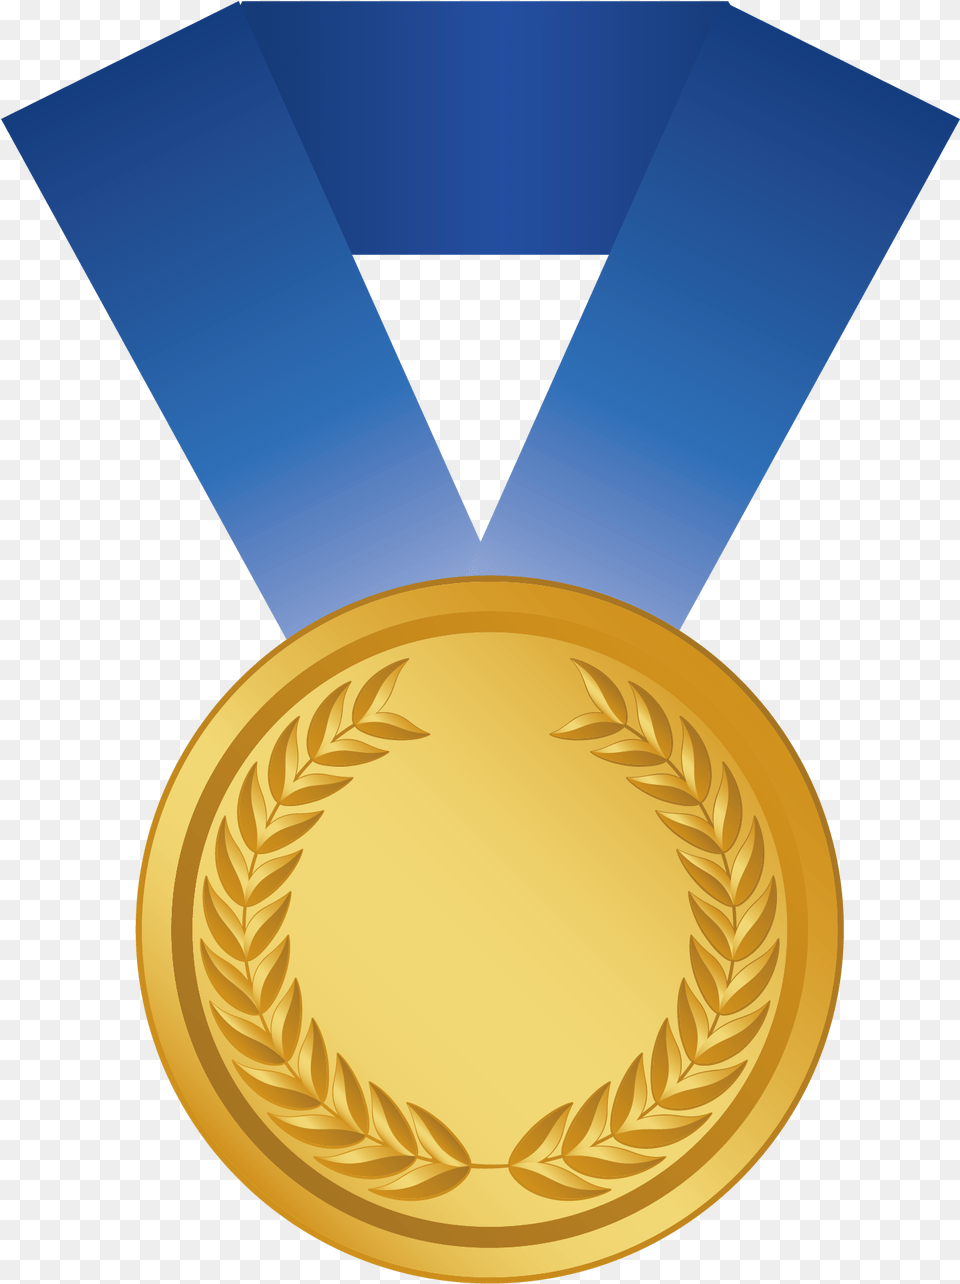 Gold Medal Award Silver Bronze Medal Cartoon, Gold Medal, Trophy Png Image